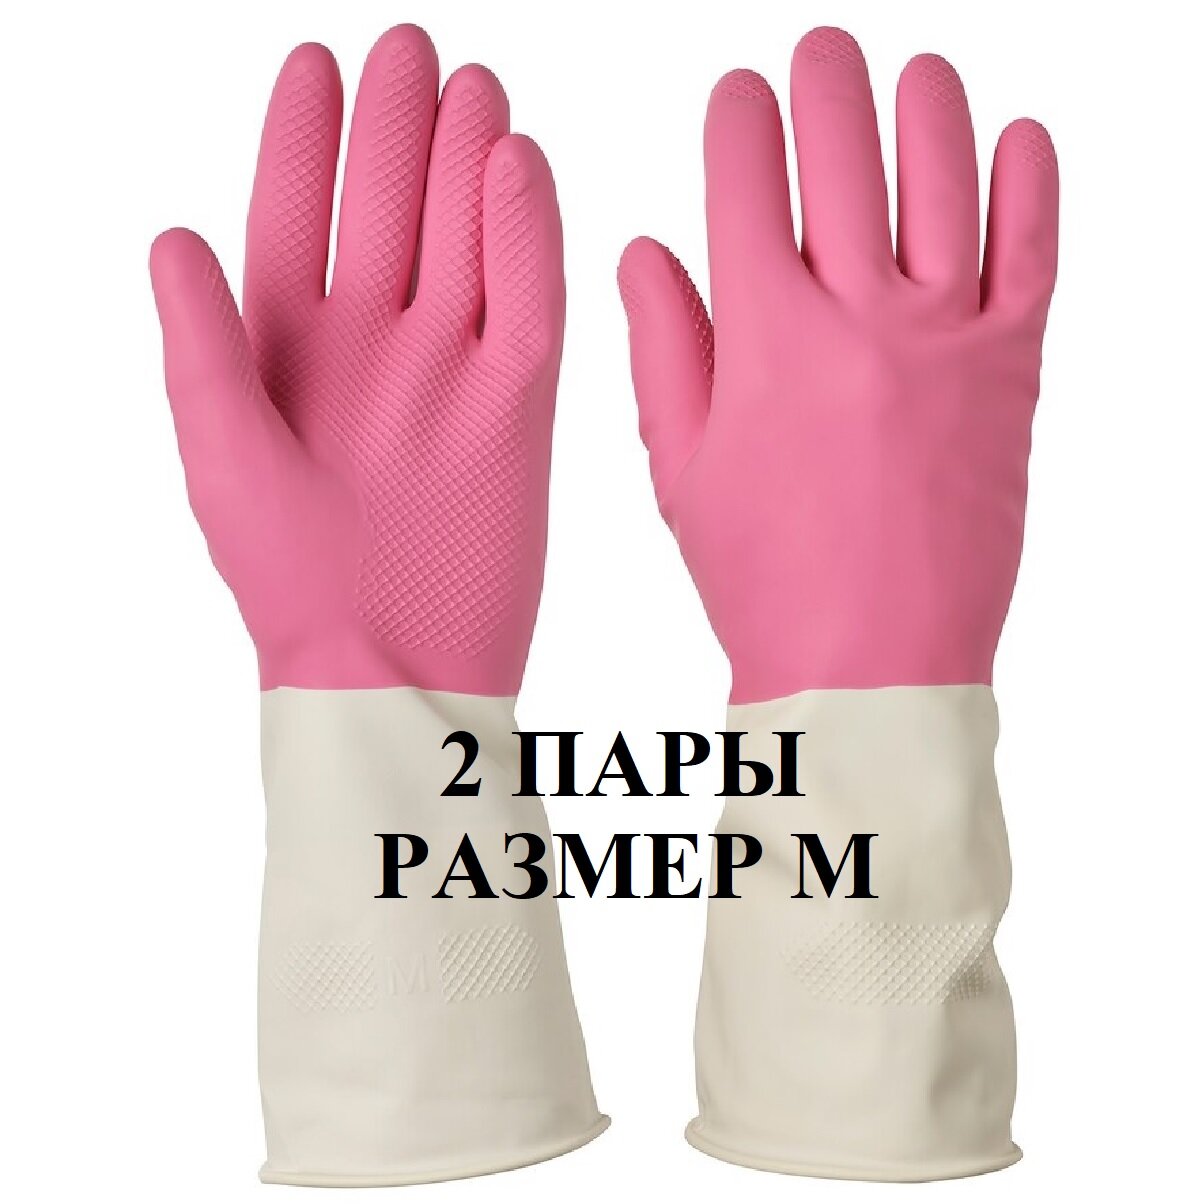 Перчатки икеа ринниг, 2 пары, размер M, цвет розовый